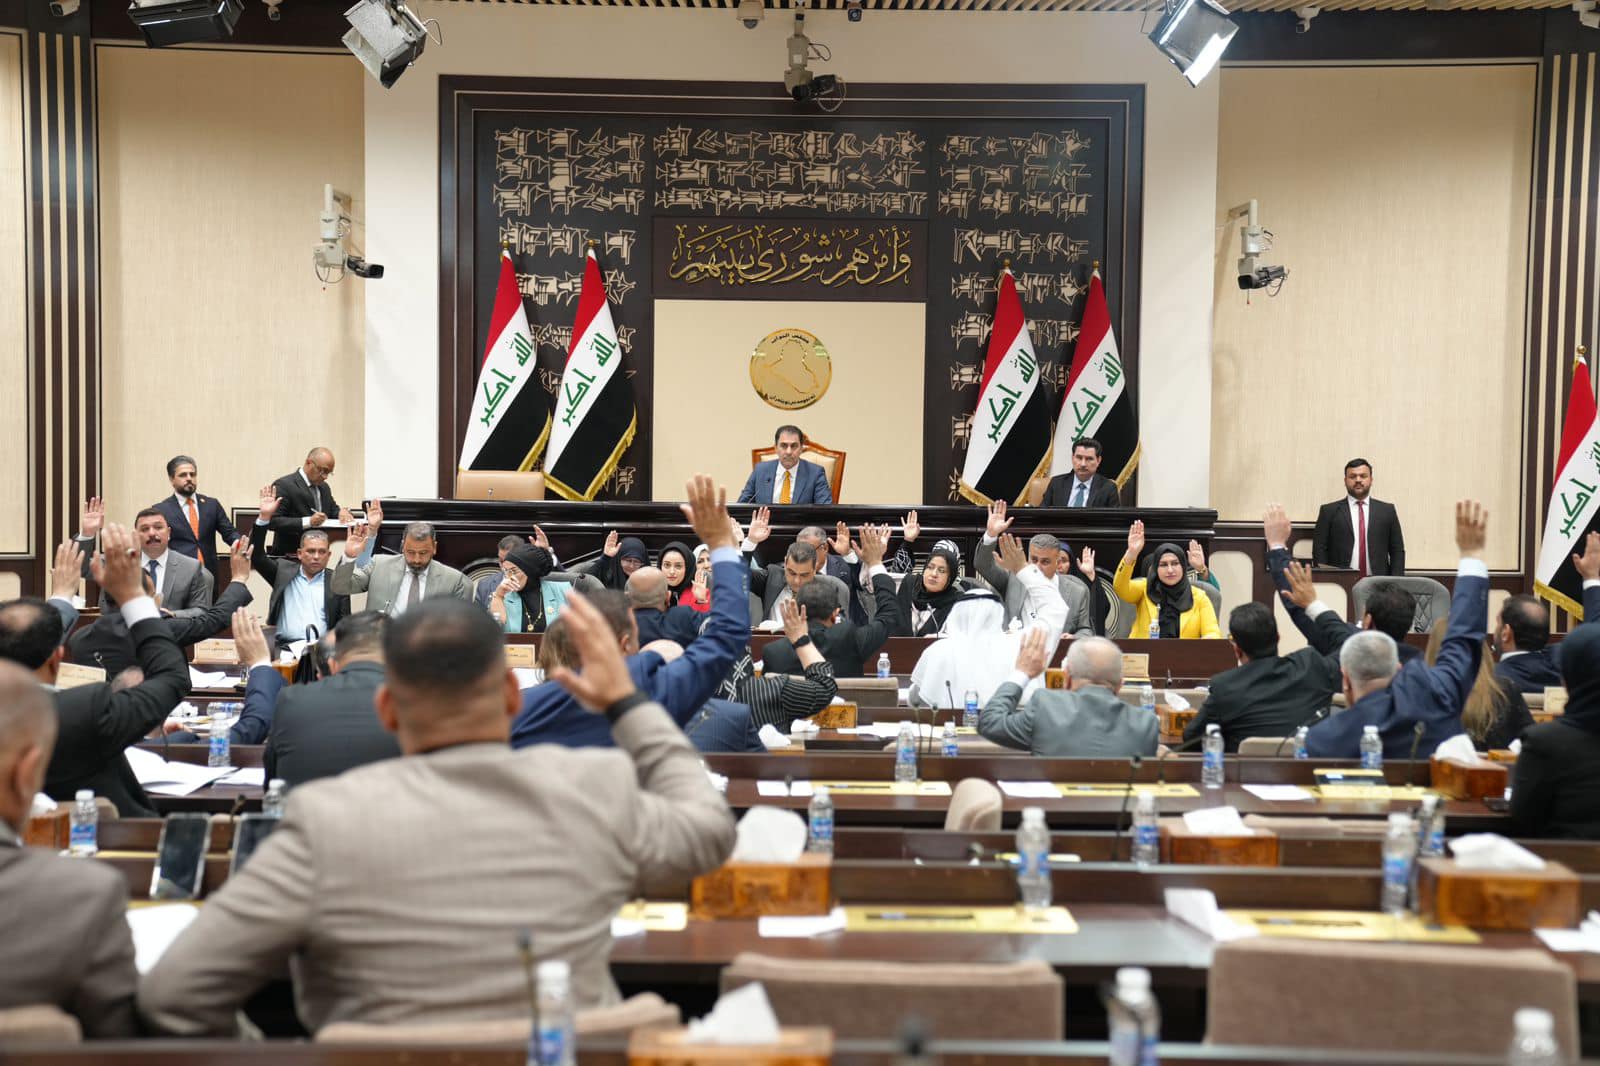 البرلمان العراقي يتسلم مقترح قانون استبدال العقوبات السالبة للحرية بمبالغ مالية